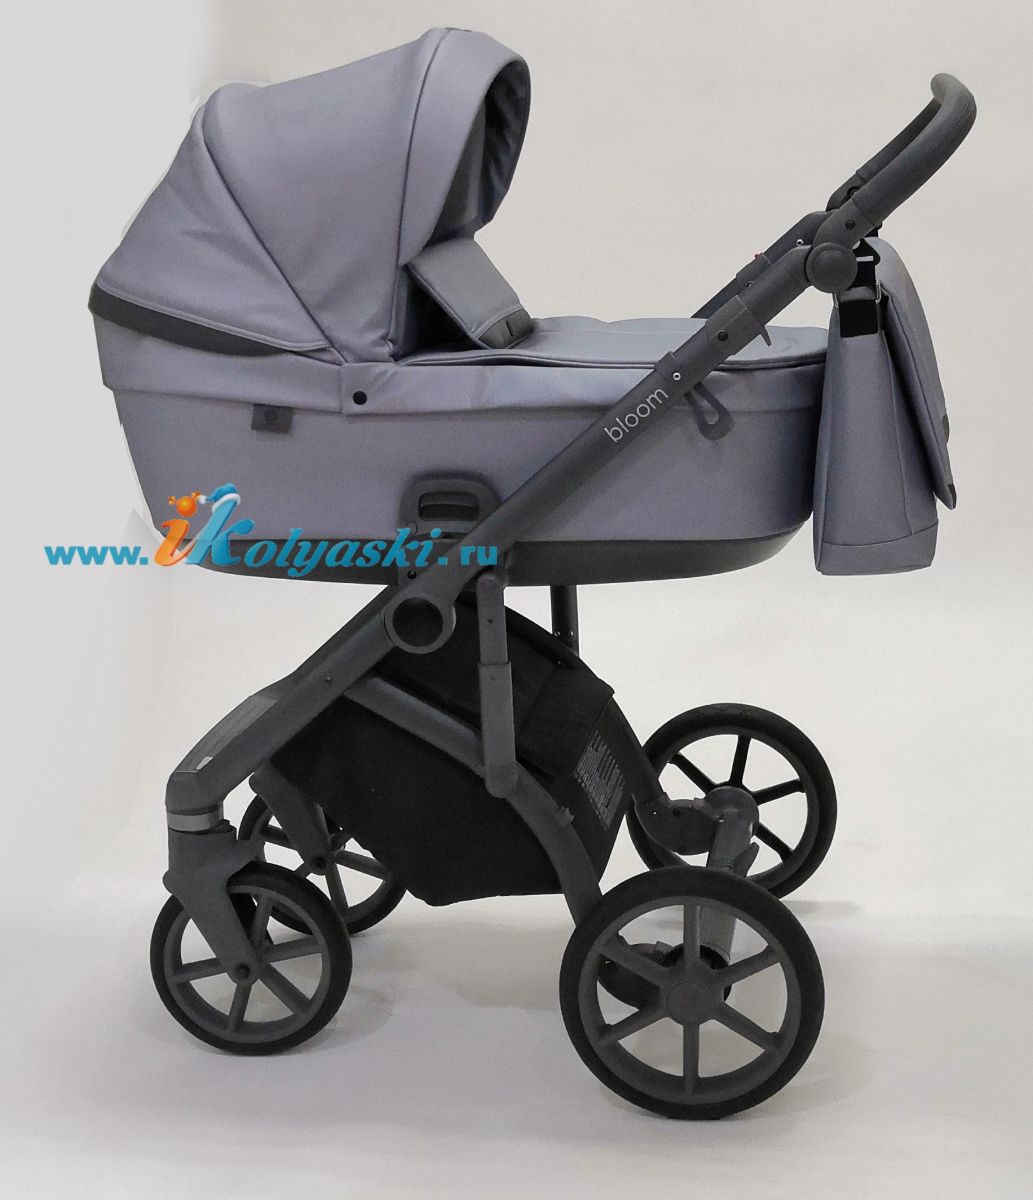 Roan Bloom 3 в 1 детская коляска для новорожденного на гелиевых бескамерных поворотных колесах с прогулочным блоком и автокреслом - купить в интернет-магазине в Москве с доставкой по РФ - цвет  Grey Pearl 